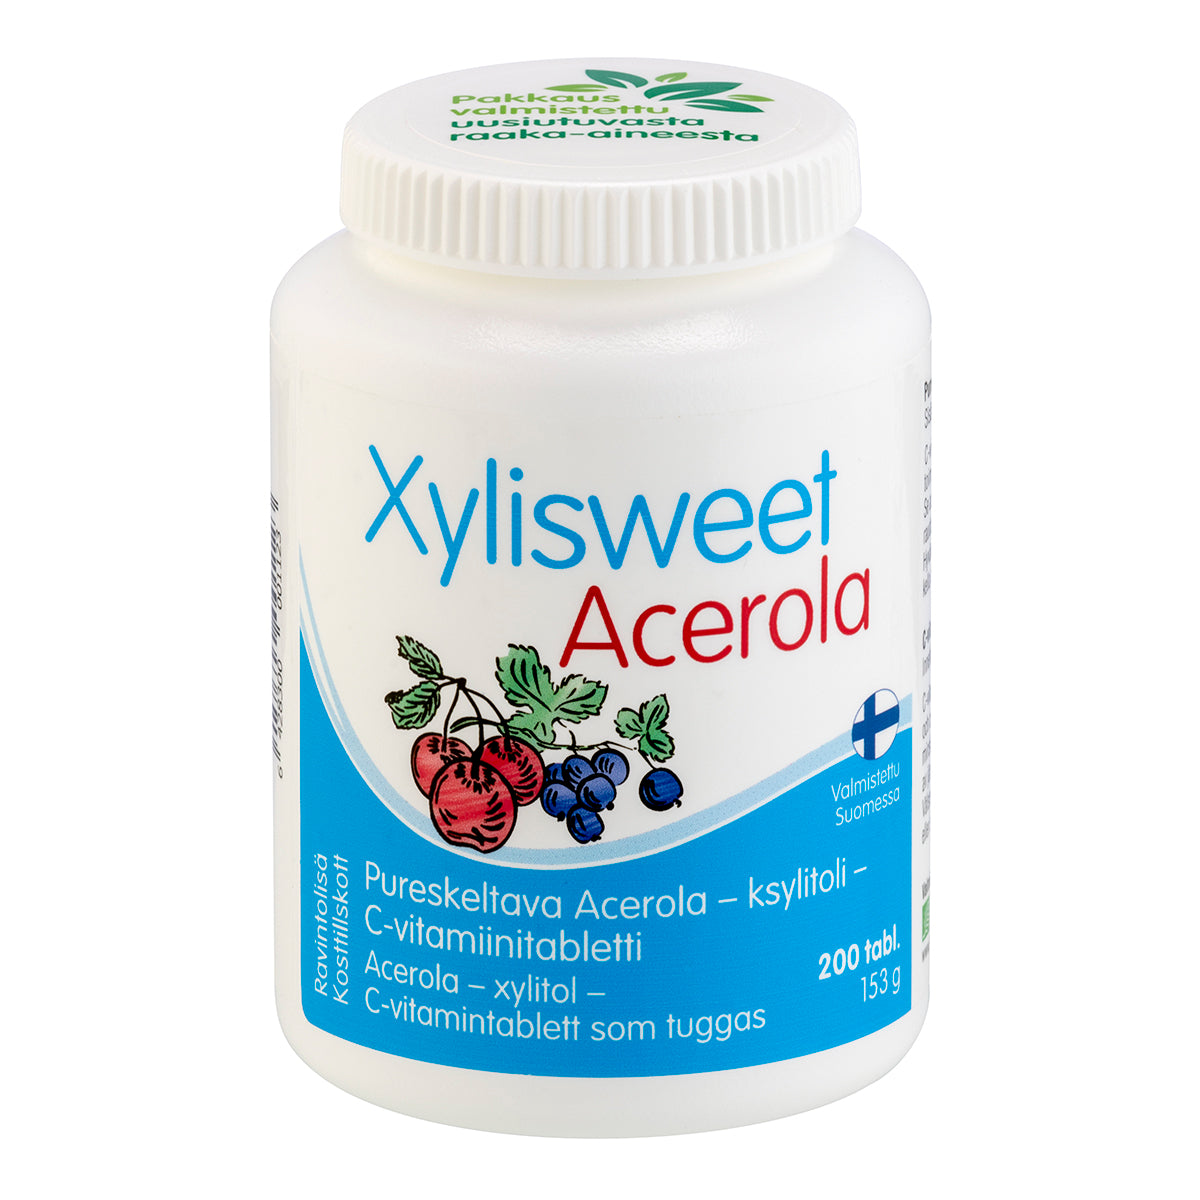 Xylisweet Acerola 75 mg - Acerola - ksylitoli - C-vitamiinitabletti 210 tabl.